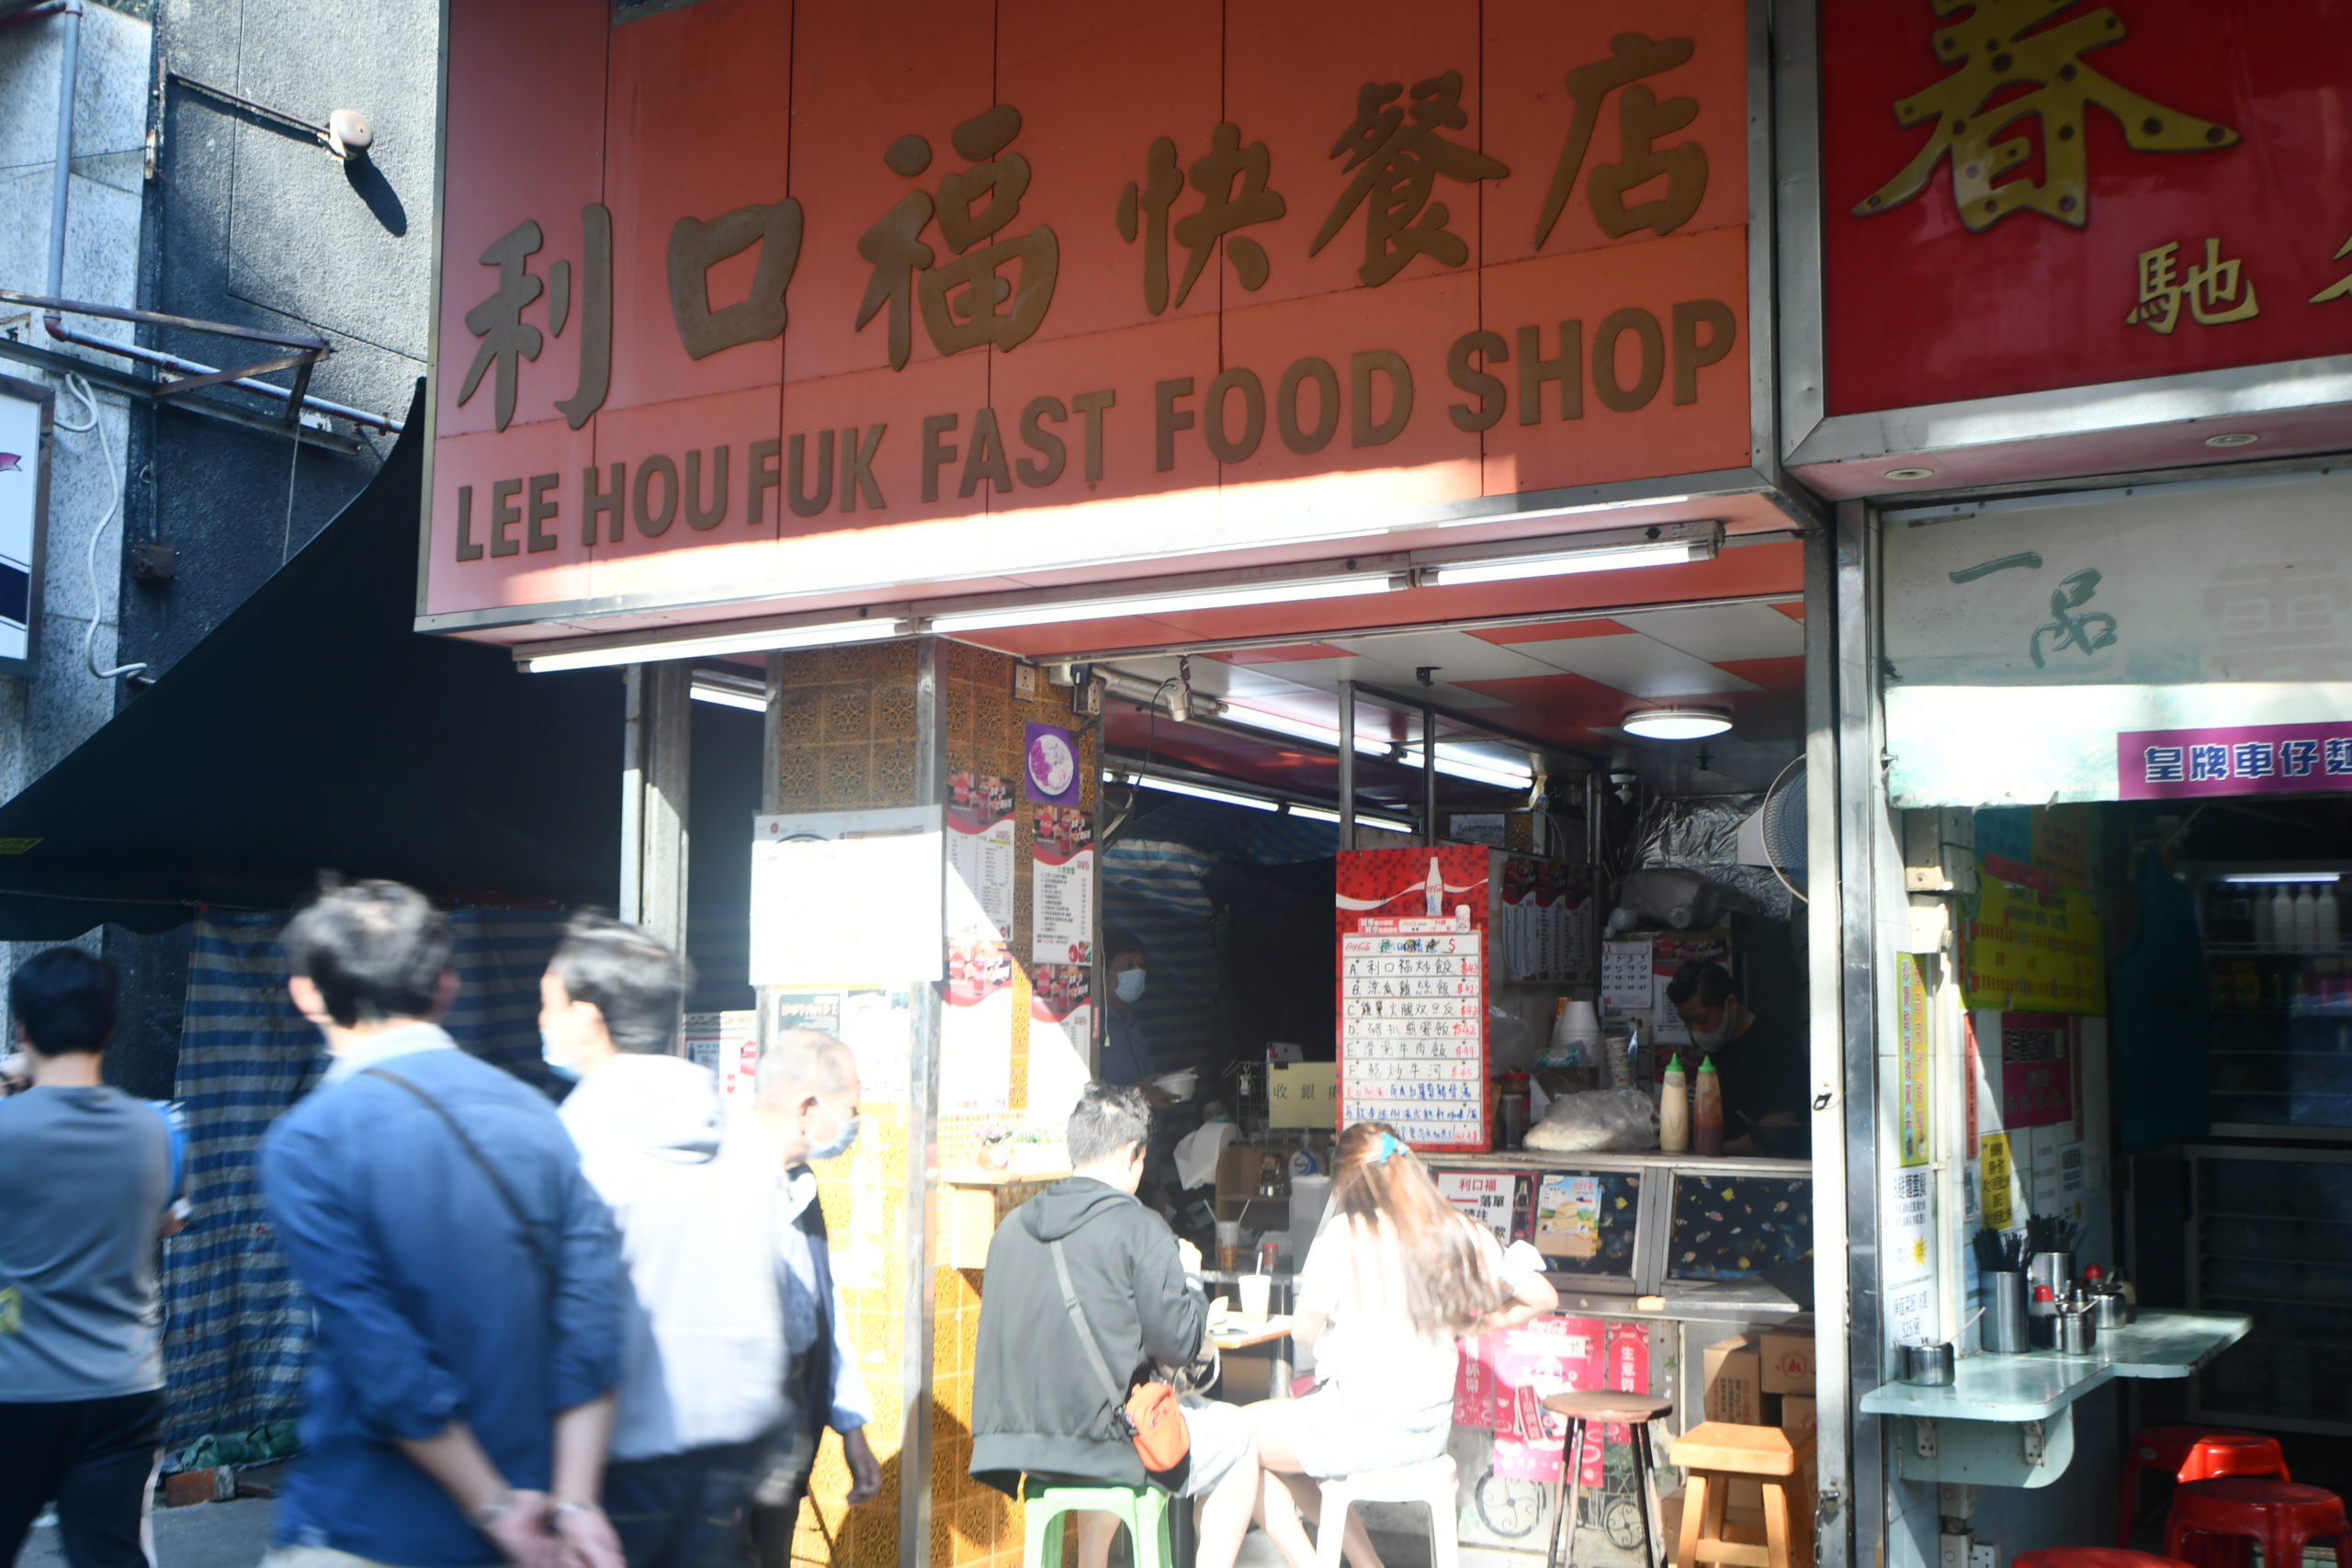 利口福快餐店 Lee Hou Fuk Fast Food Shop